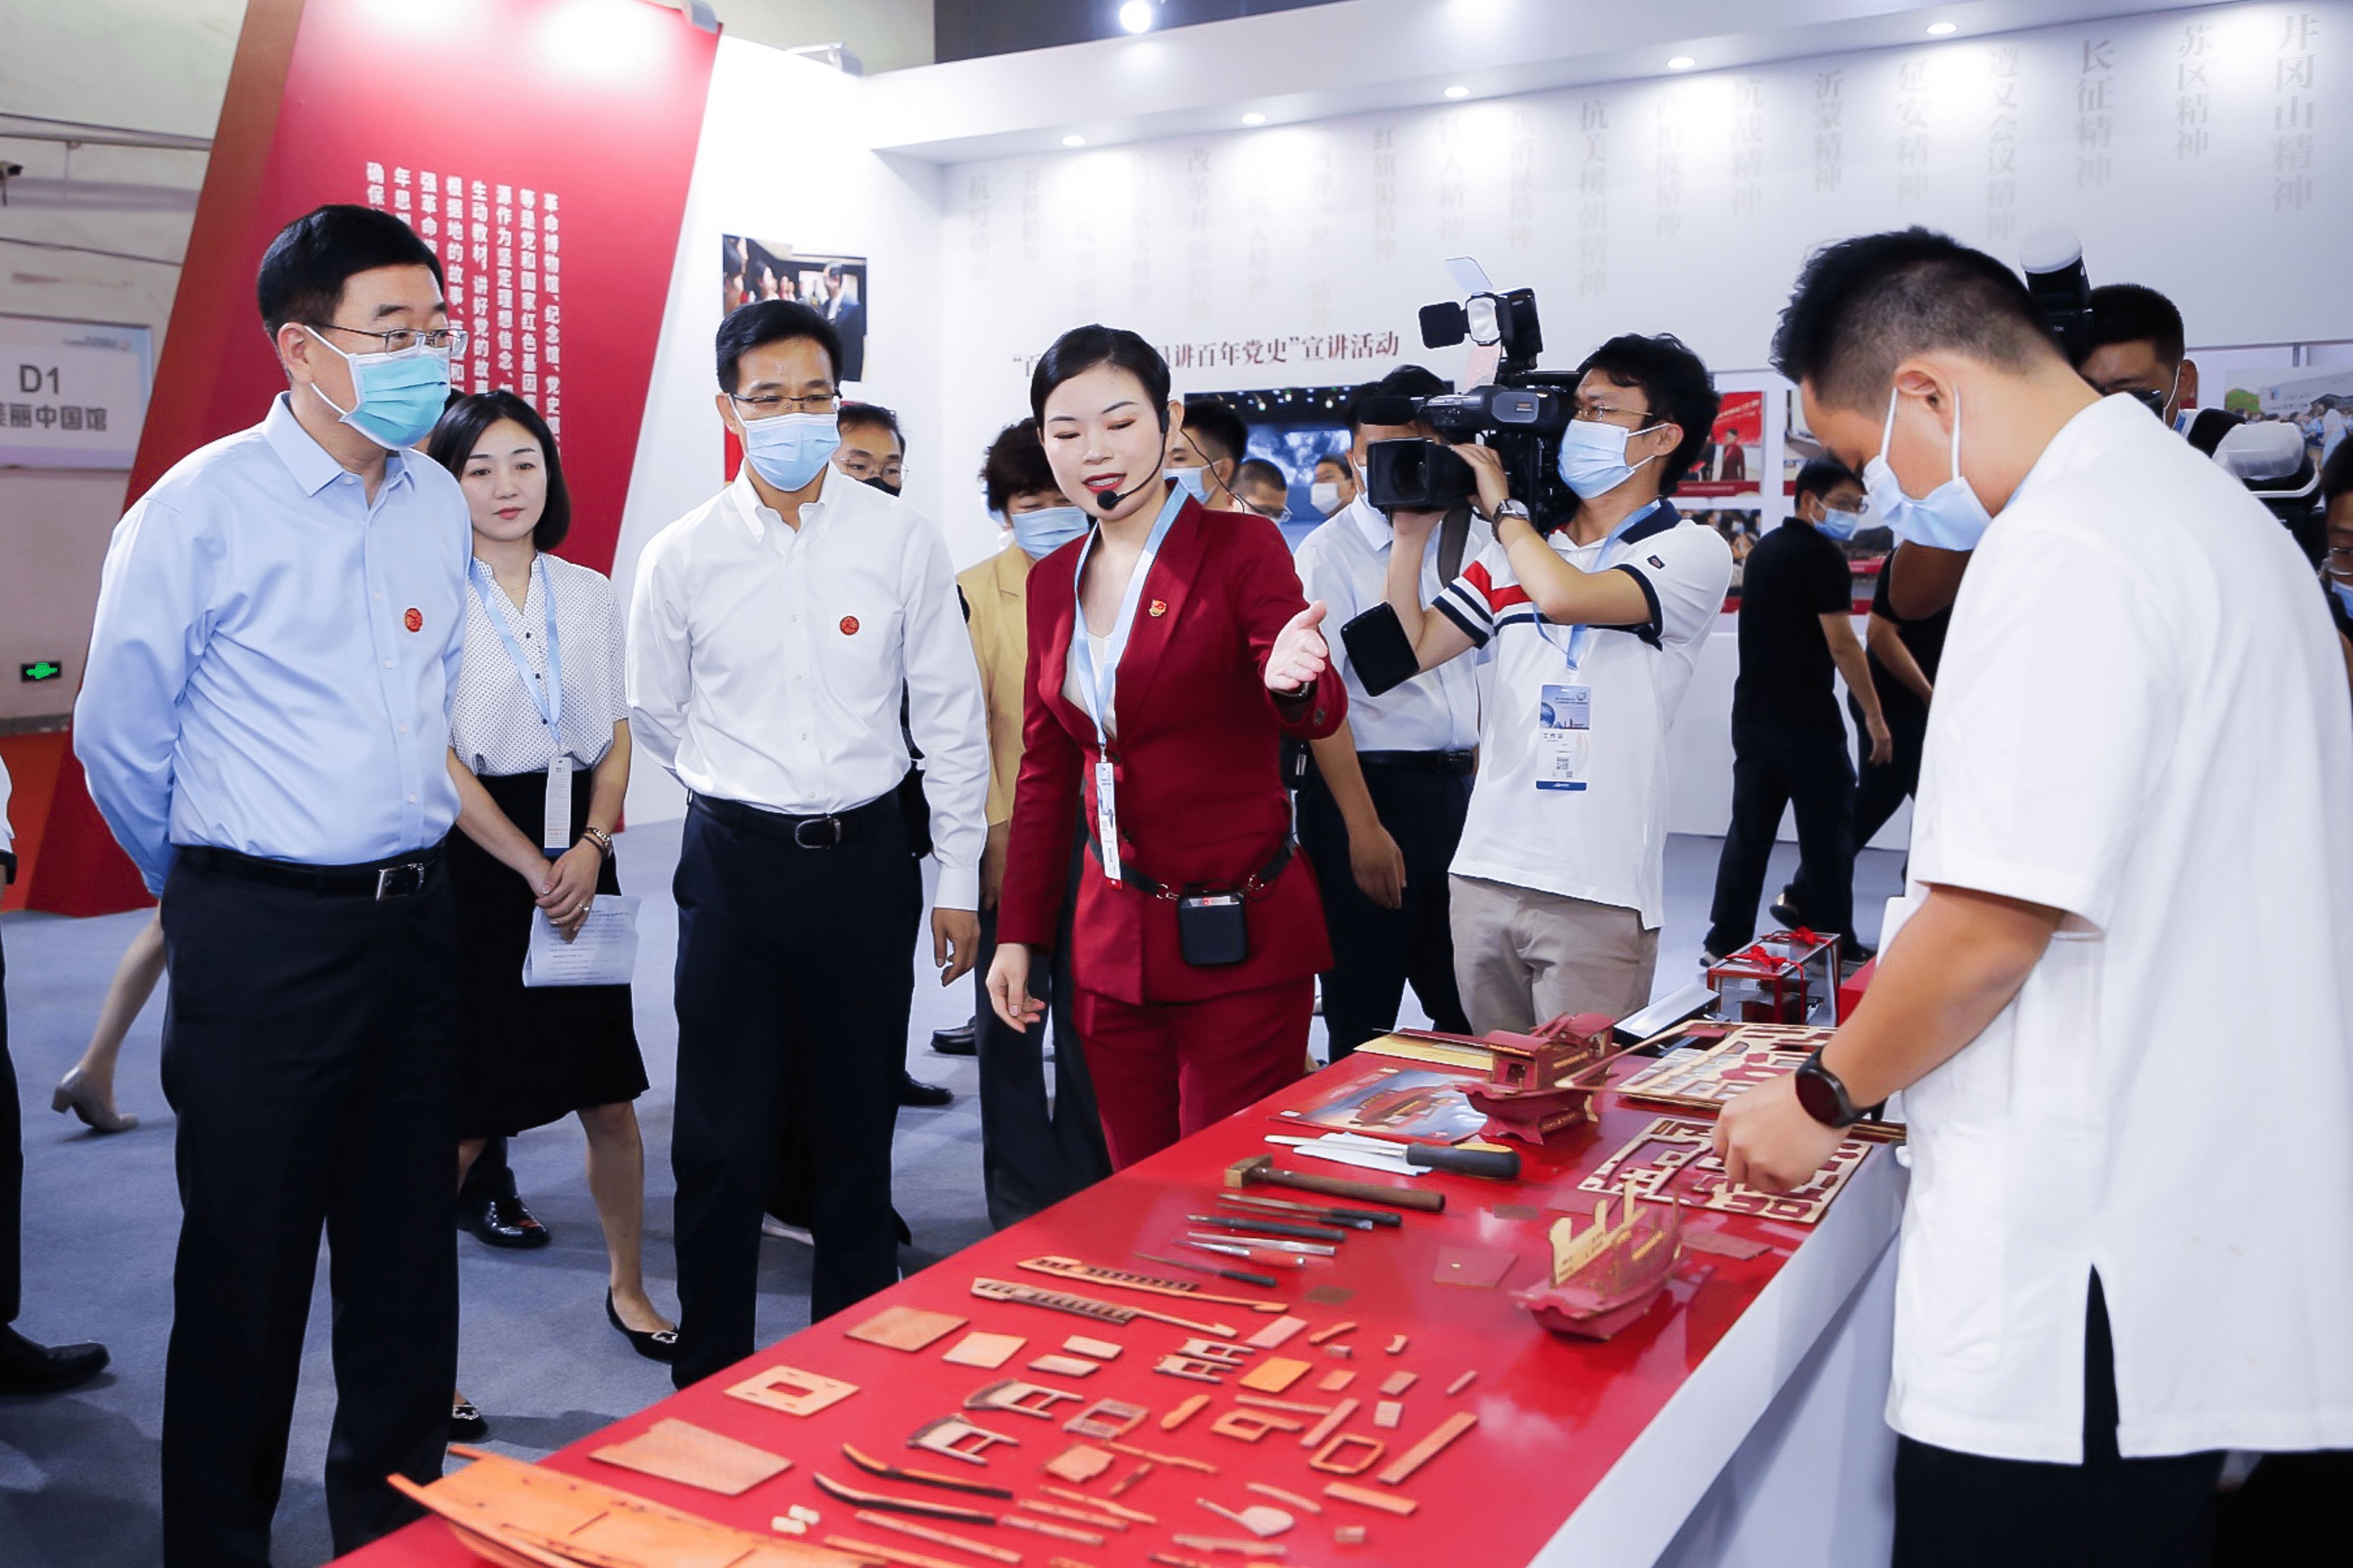 诗和远方，“义”起出发——第16届中国义乌文化和旅游产品交易博览会开启创意之旅